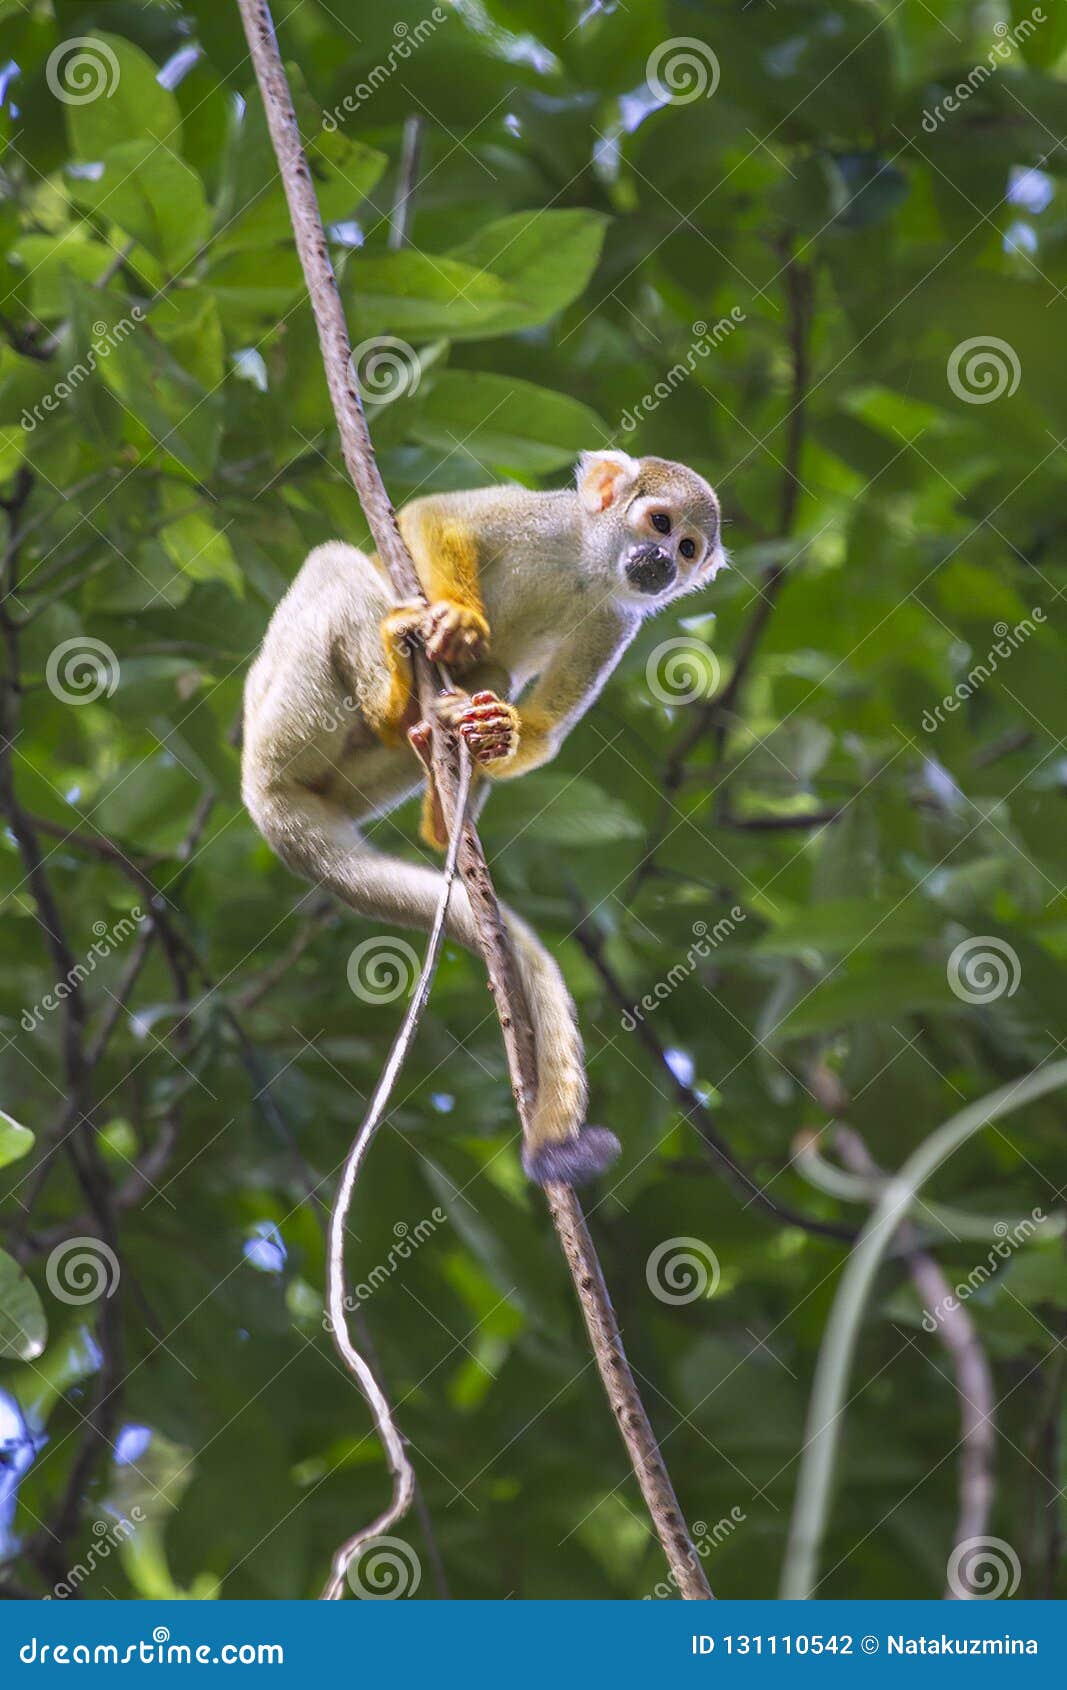 common squirrel monkey, saimiri sciureus